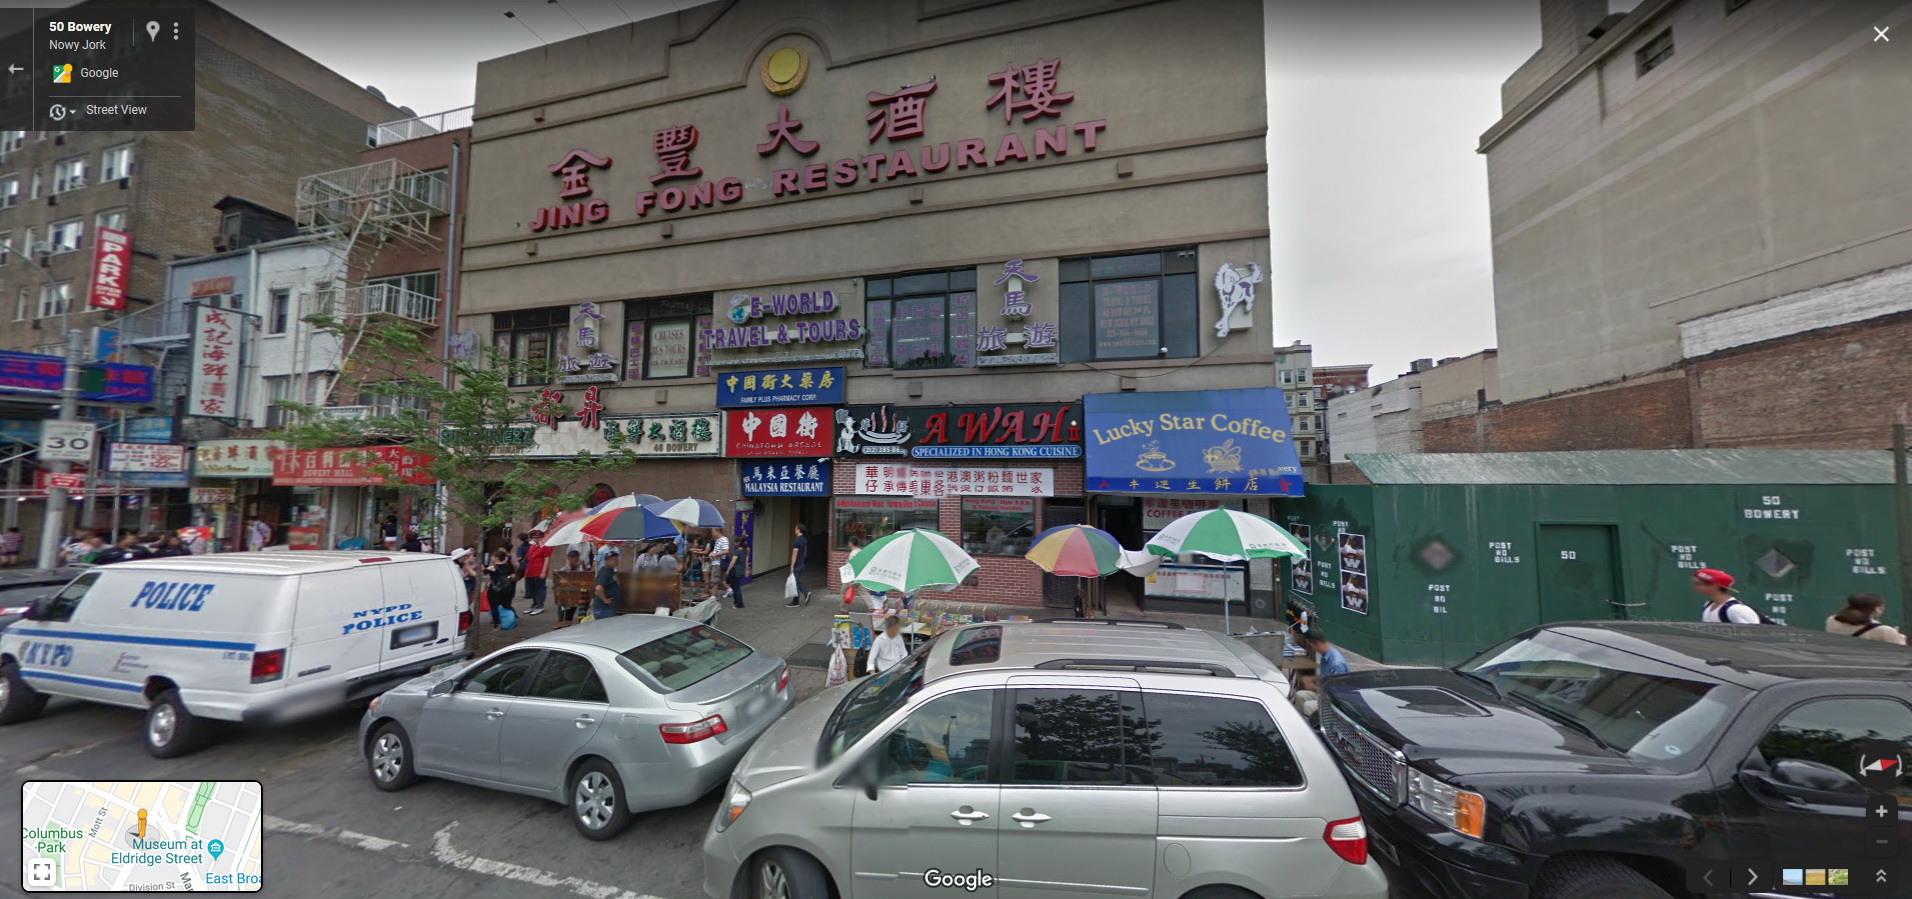 closing jing fong restaurant